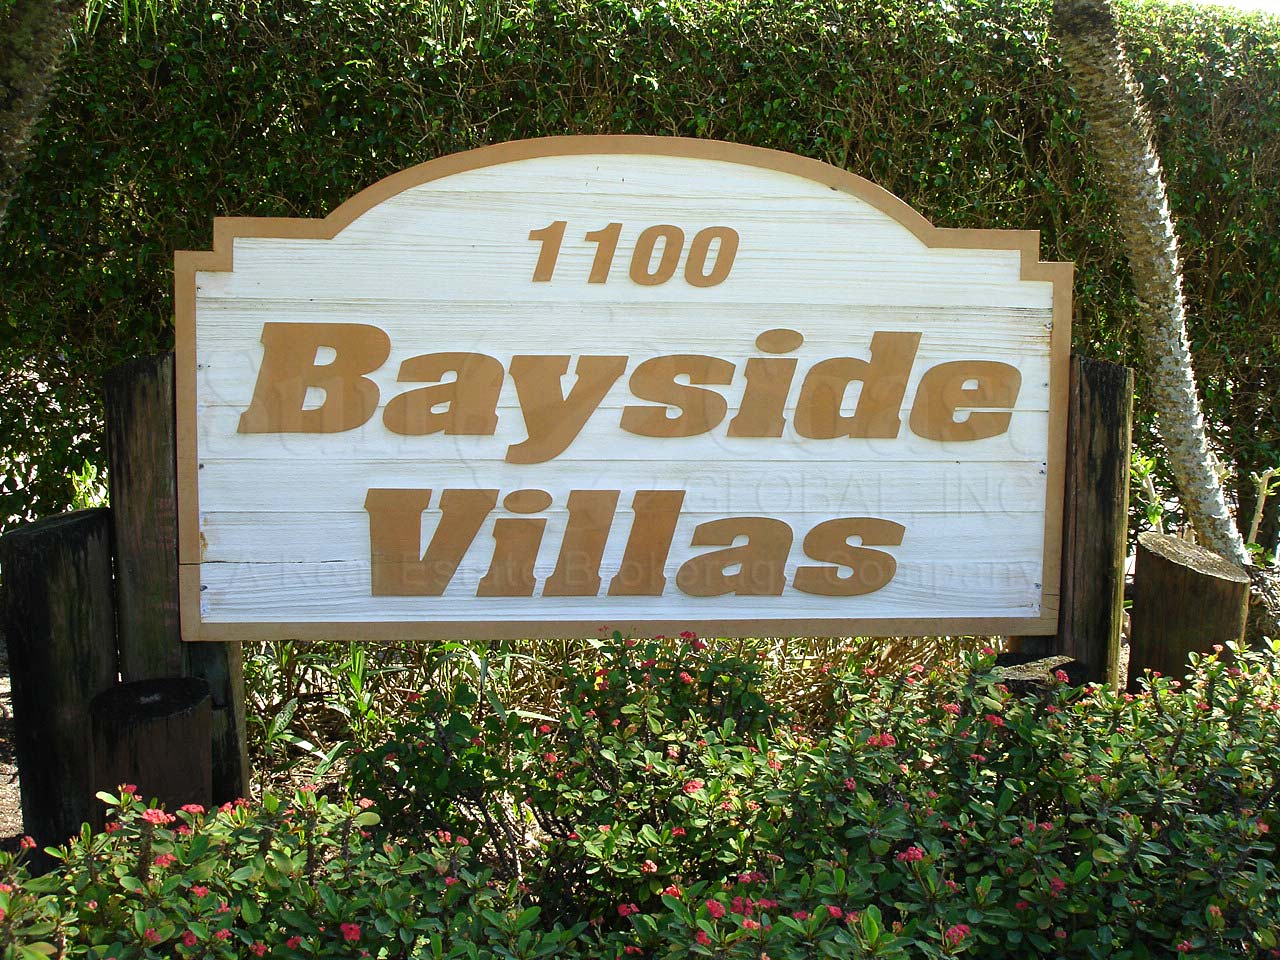 Bayside Villas Signage